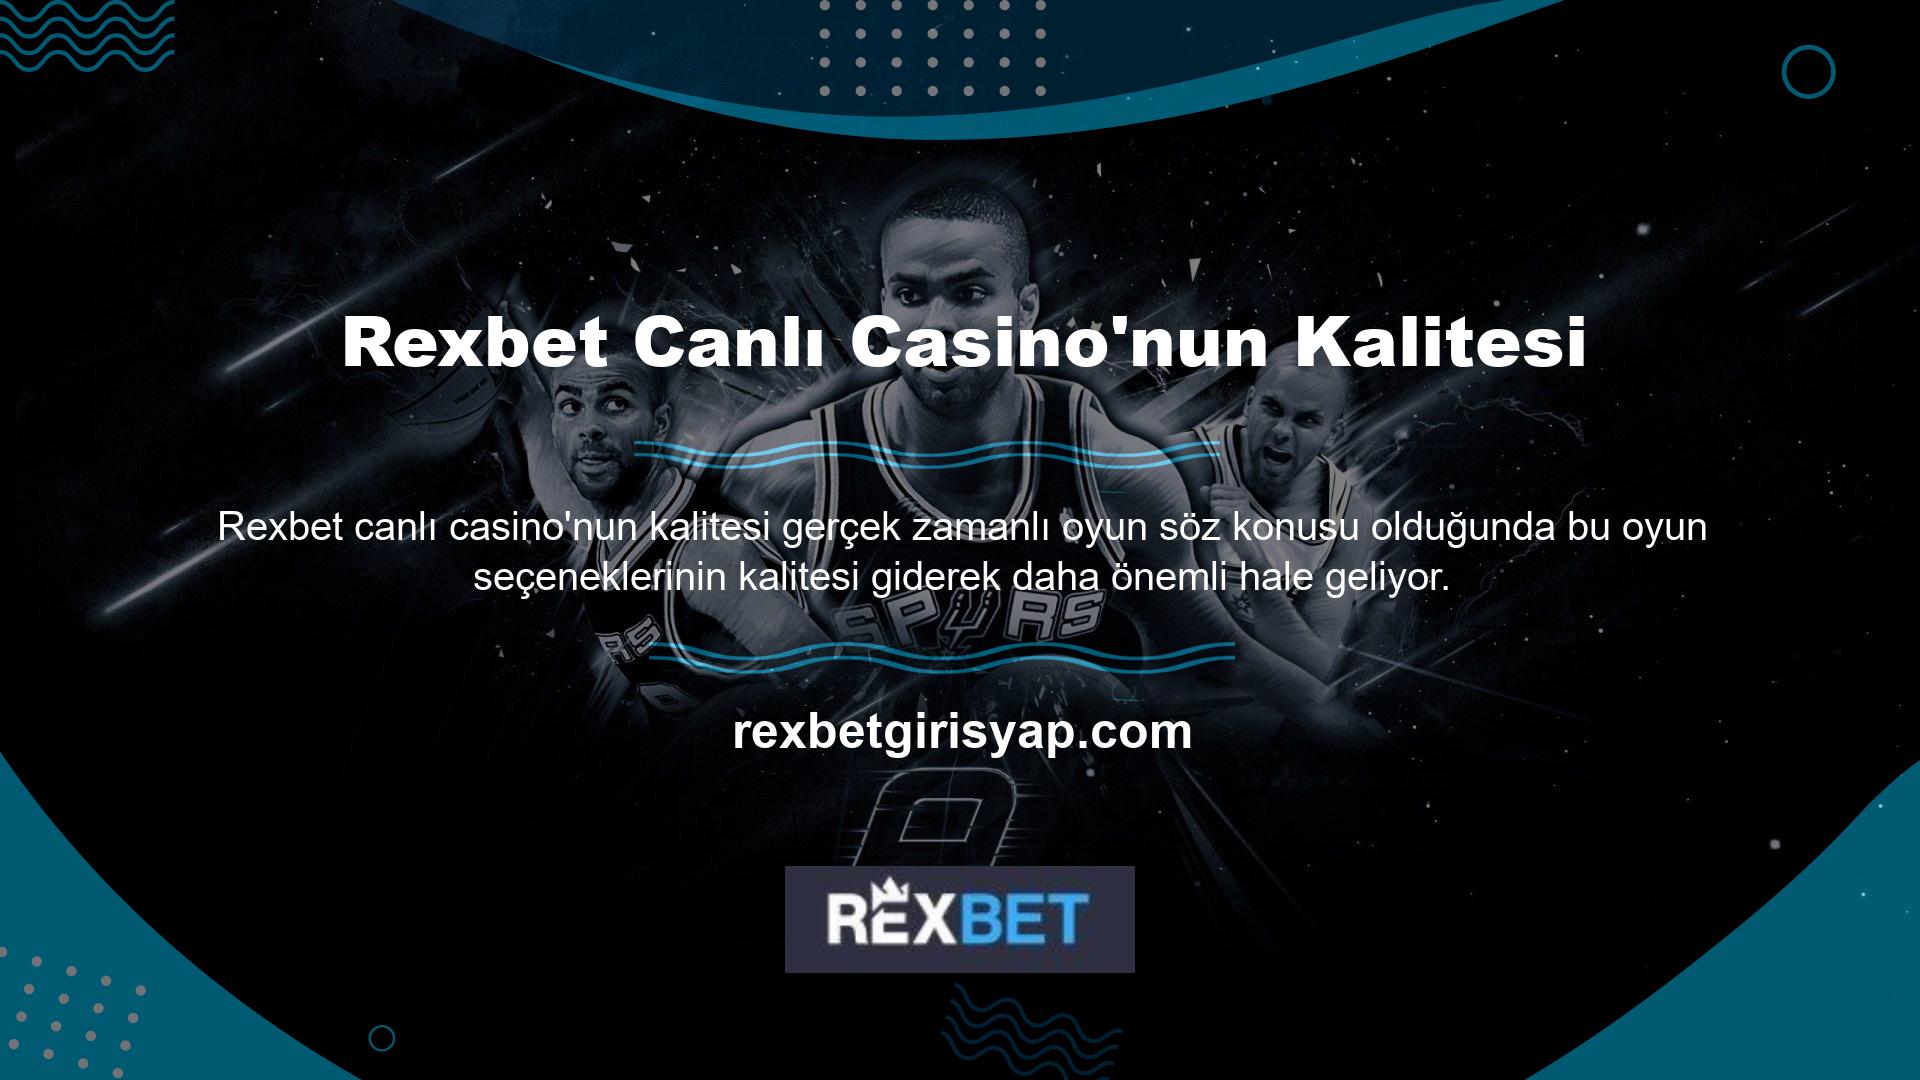 Bu nedenle Rexbet Canlı Casino'nun kalitesi, katılmadan ve yatırım yapmadan önce dikkate almanız gereken noktalardan biridir